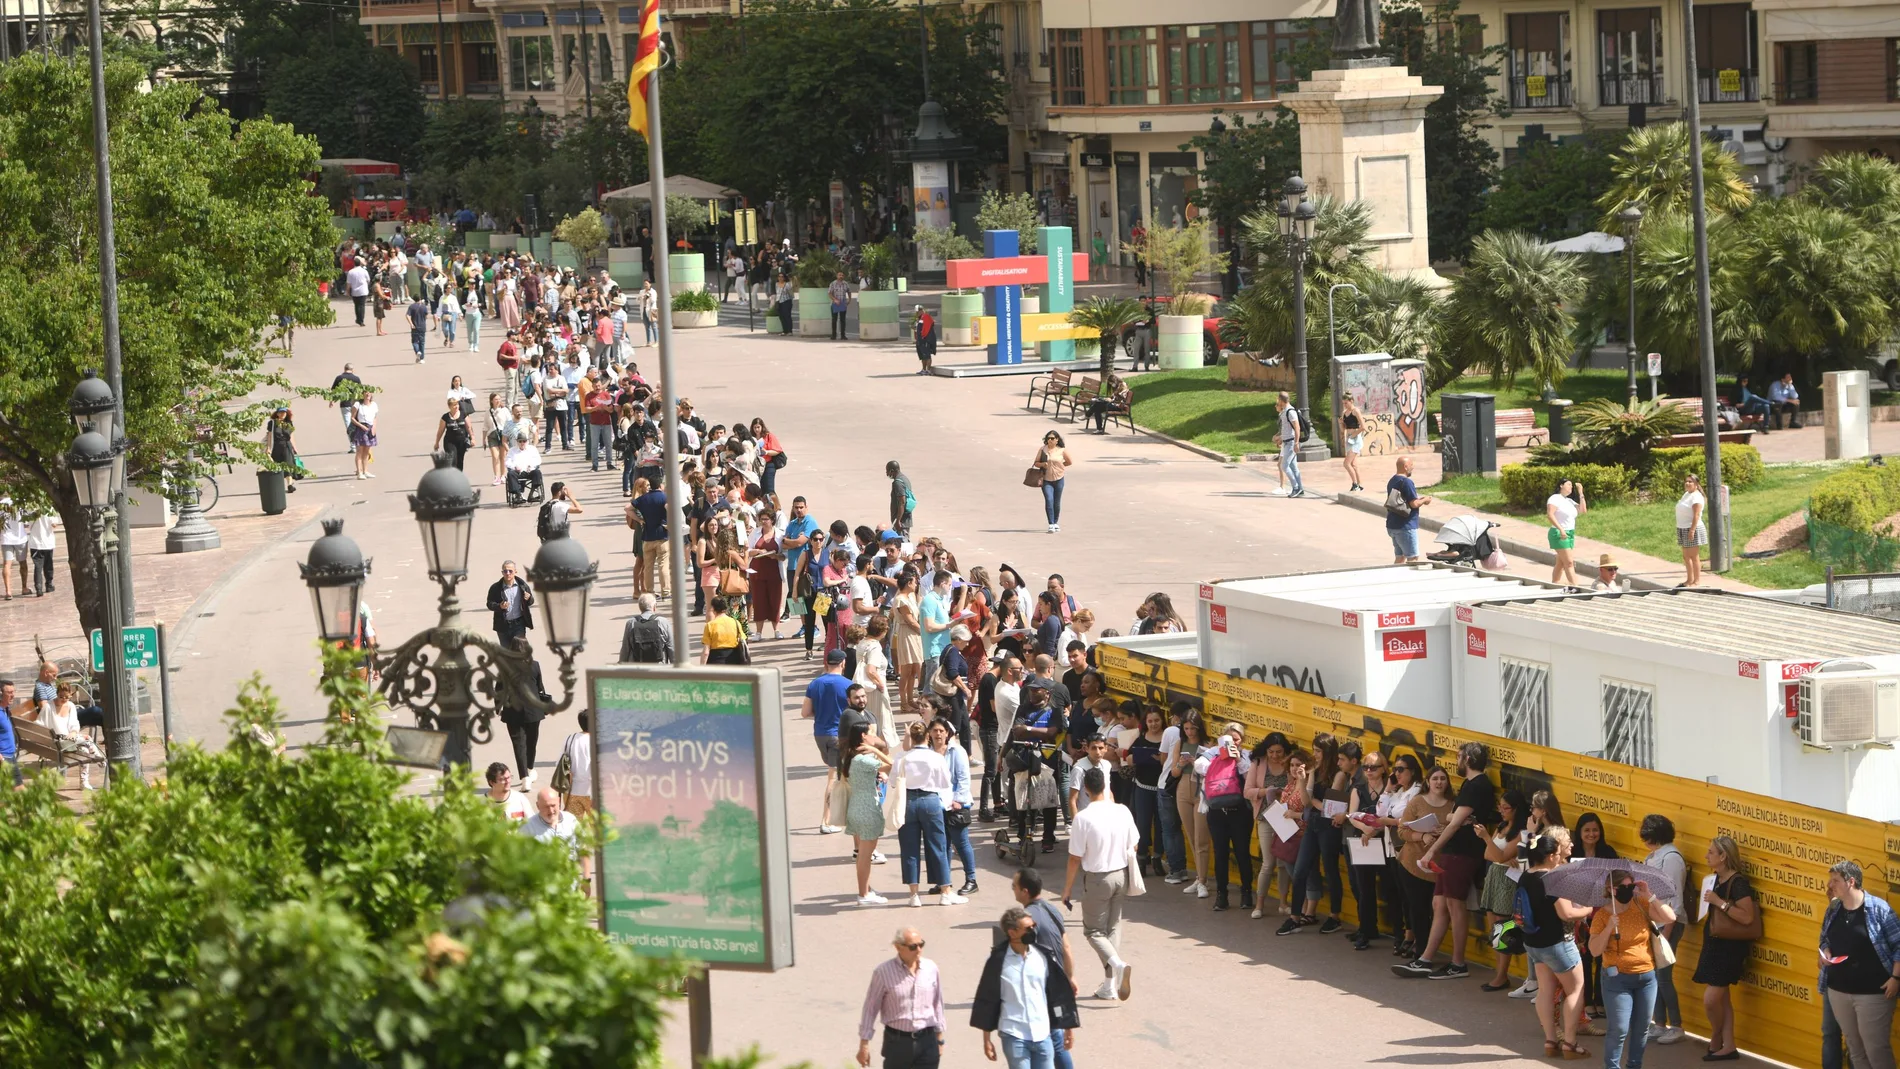 La cola que parte del centro de la plaza, llega hasta la calle María Cristina